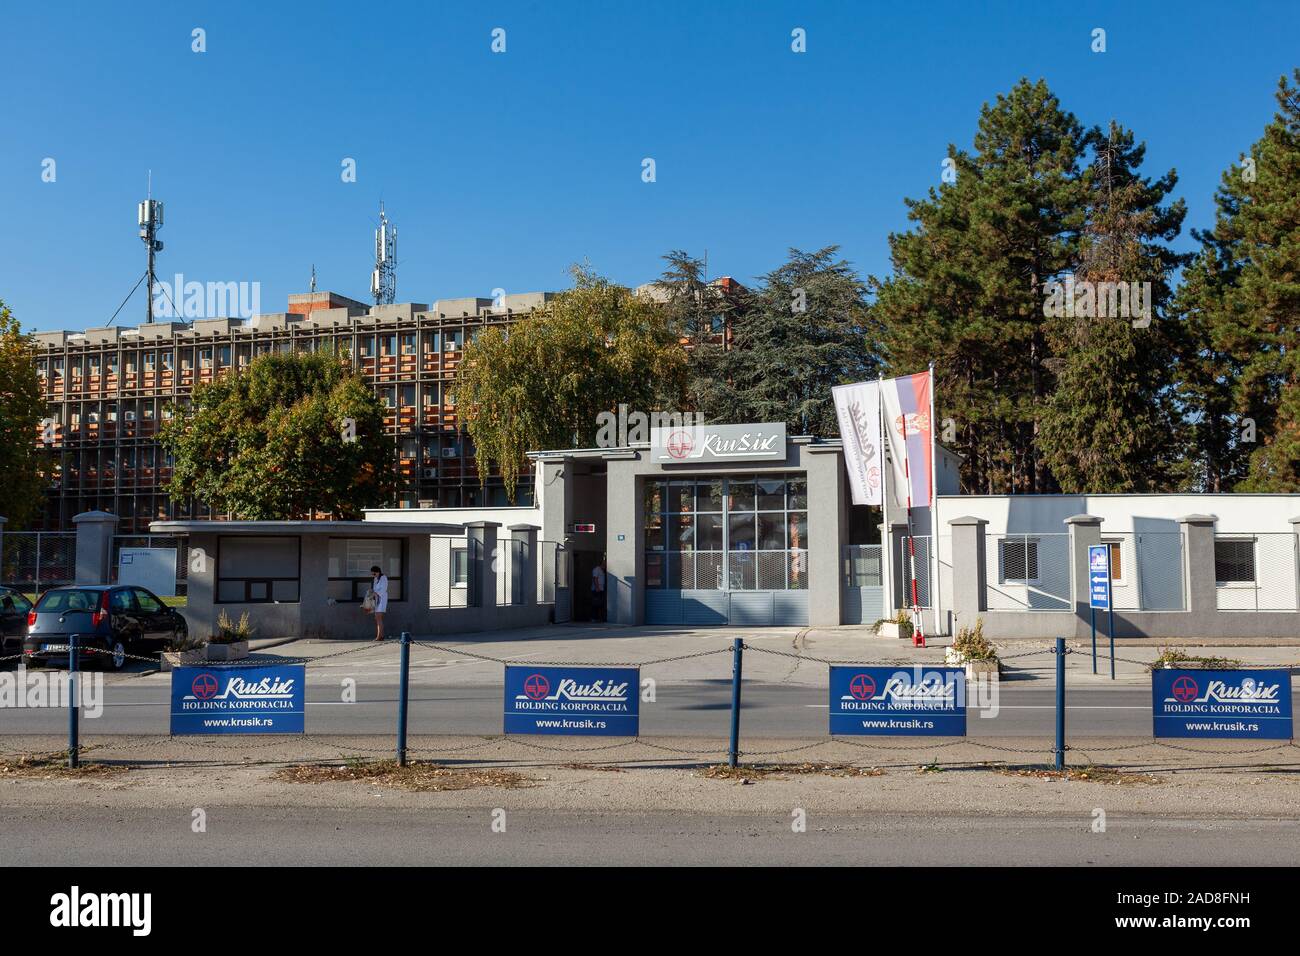 Krusik - entrée principale de l'entreprise d'état pour la production de la défense civile et l'équipement connexe, avec le siège à Belgrade, Serbie Banque D'Images